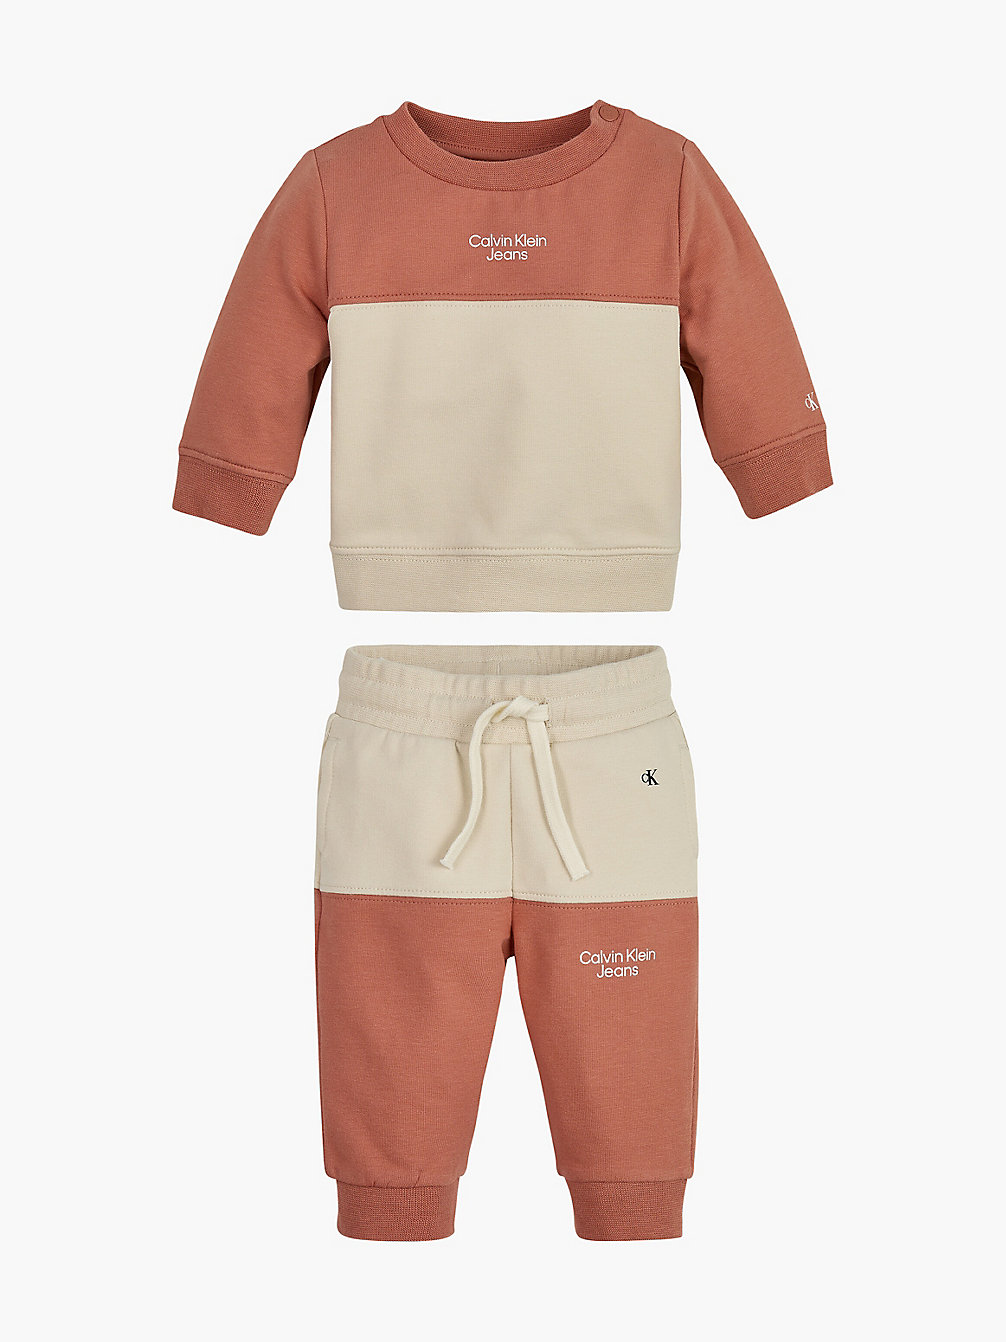 COPPER REEF > Baby-Trainingsanzug Im Blockfarben-Design > undefined newborn - Calvin Klein